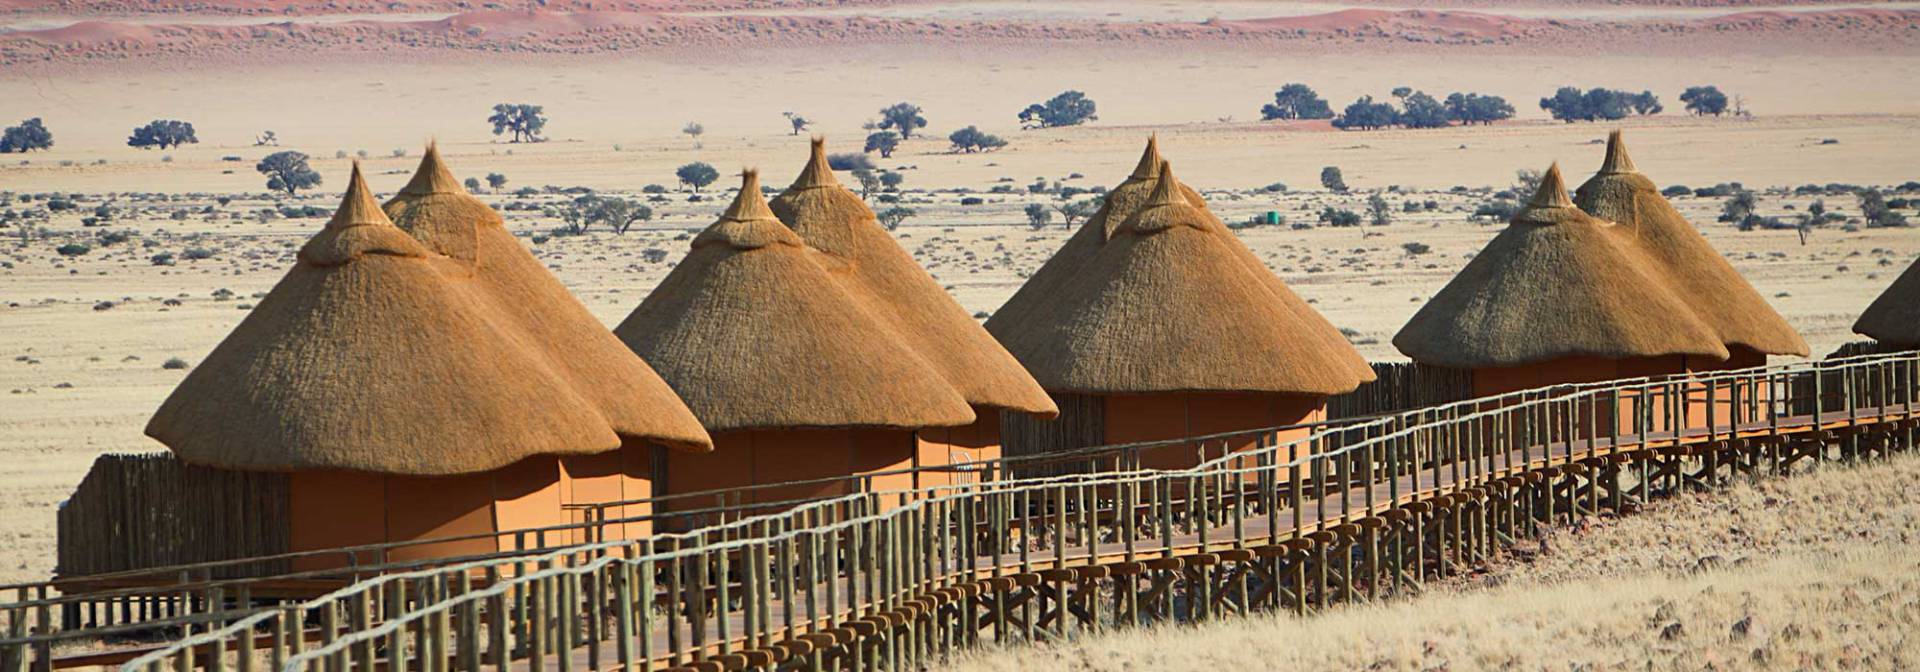 Luxuslodge in der Namib nahe Sossusvlei